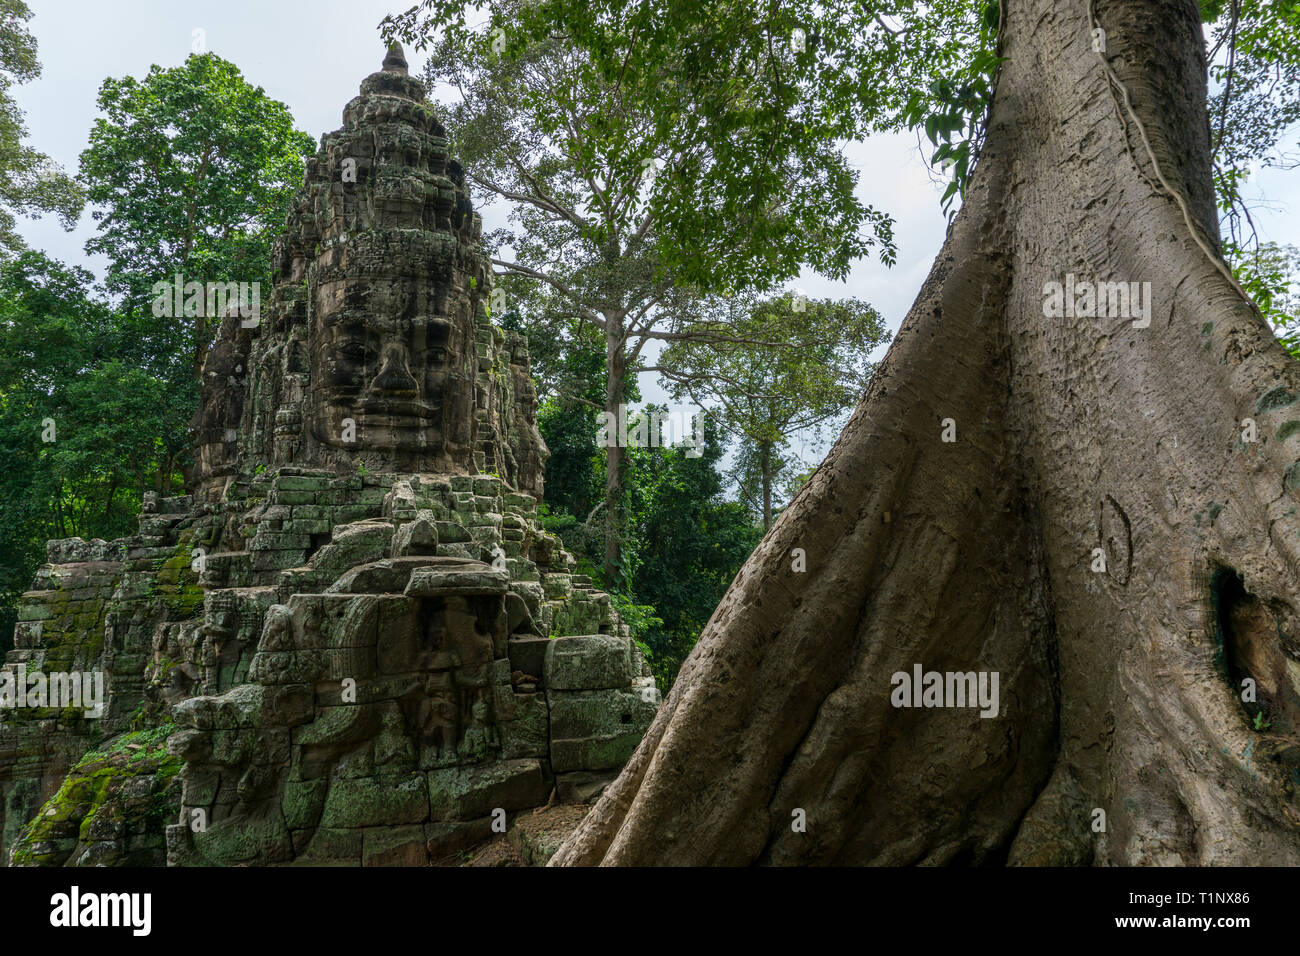 Die reich verzierten nördlichen Tor zum Angkor Thom Tempel mit einem großen tropischen Baum im Vordergrund. Stockfoto